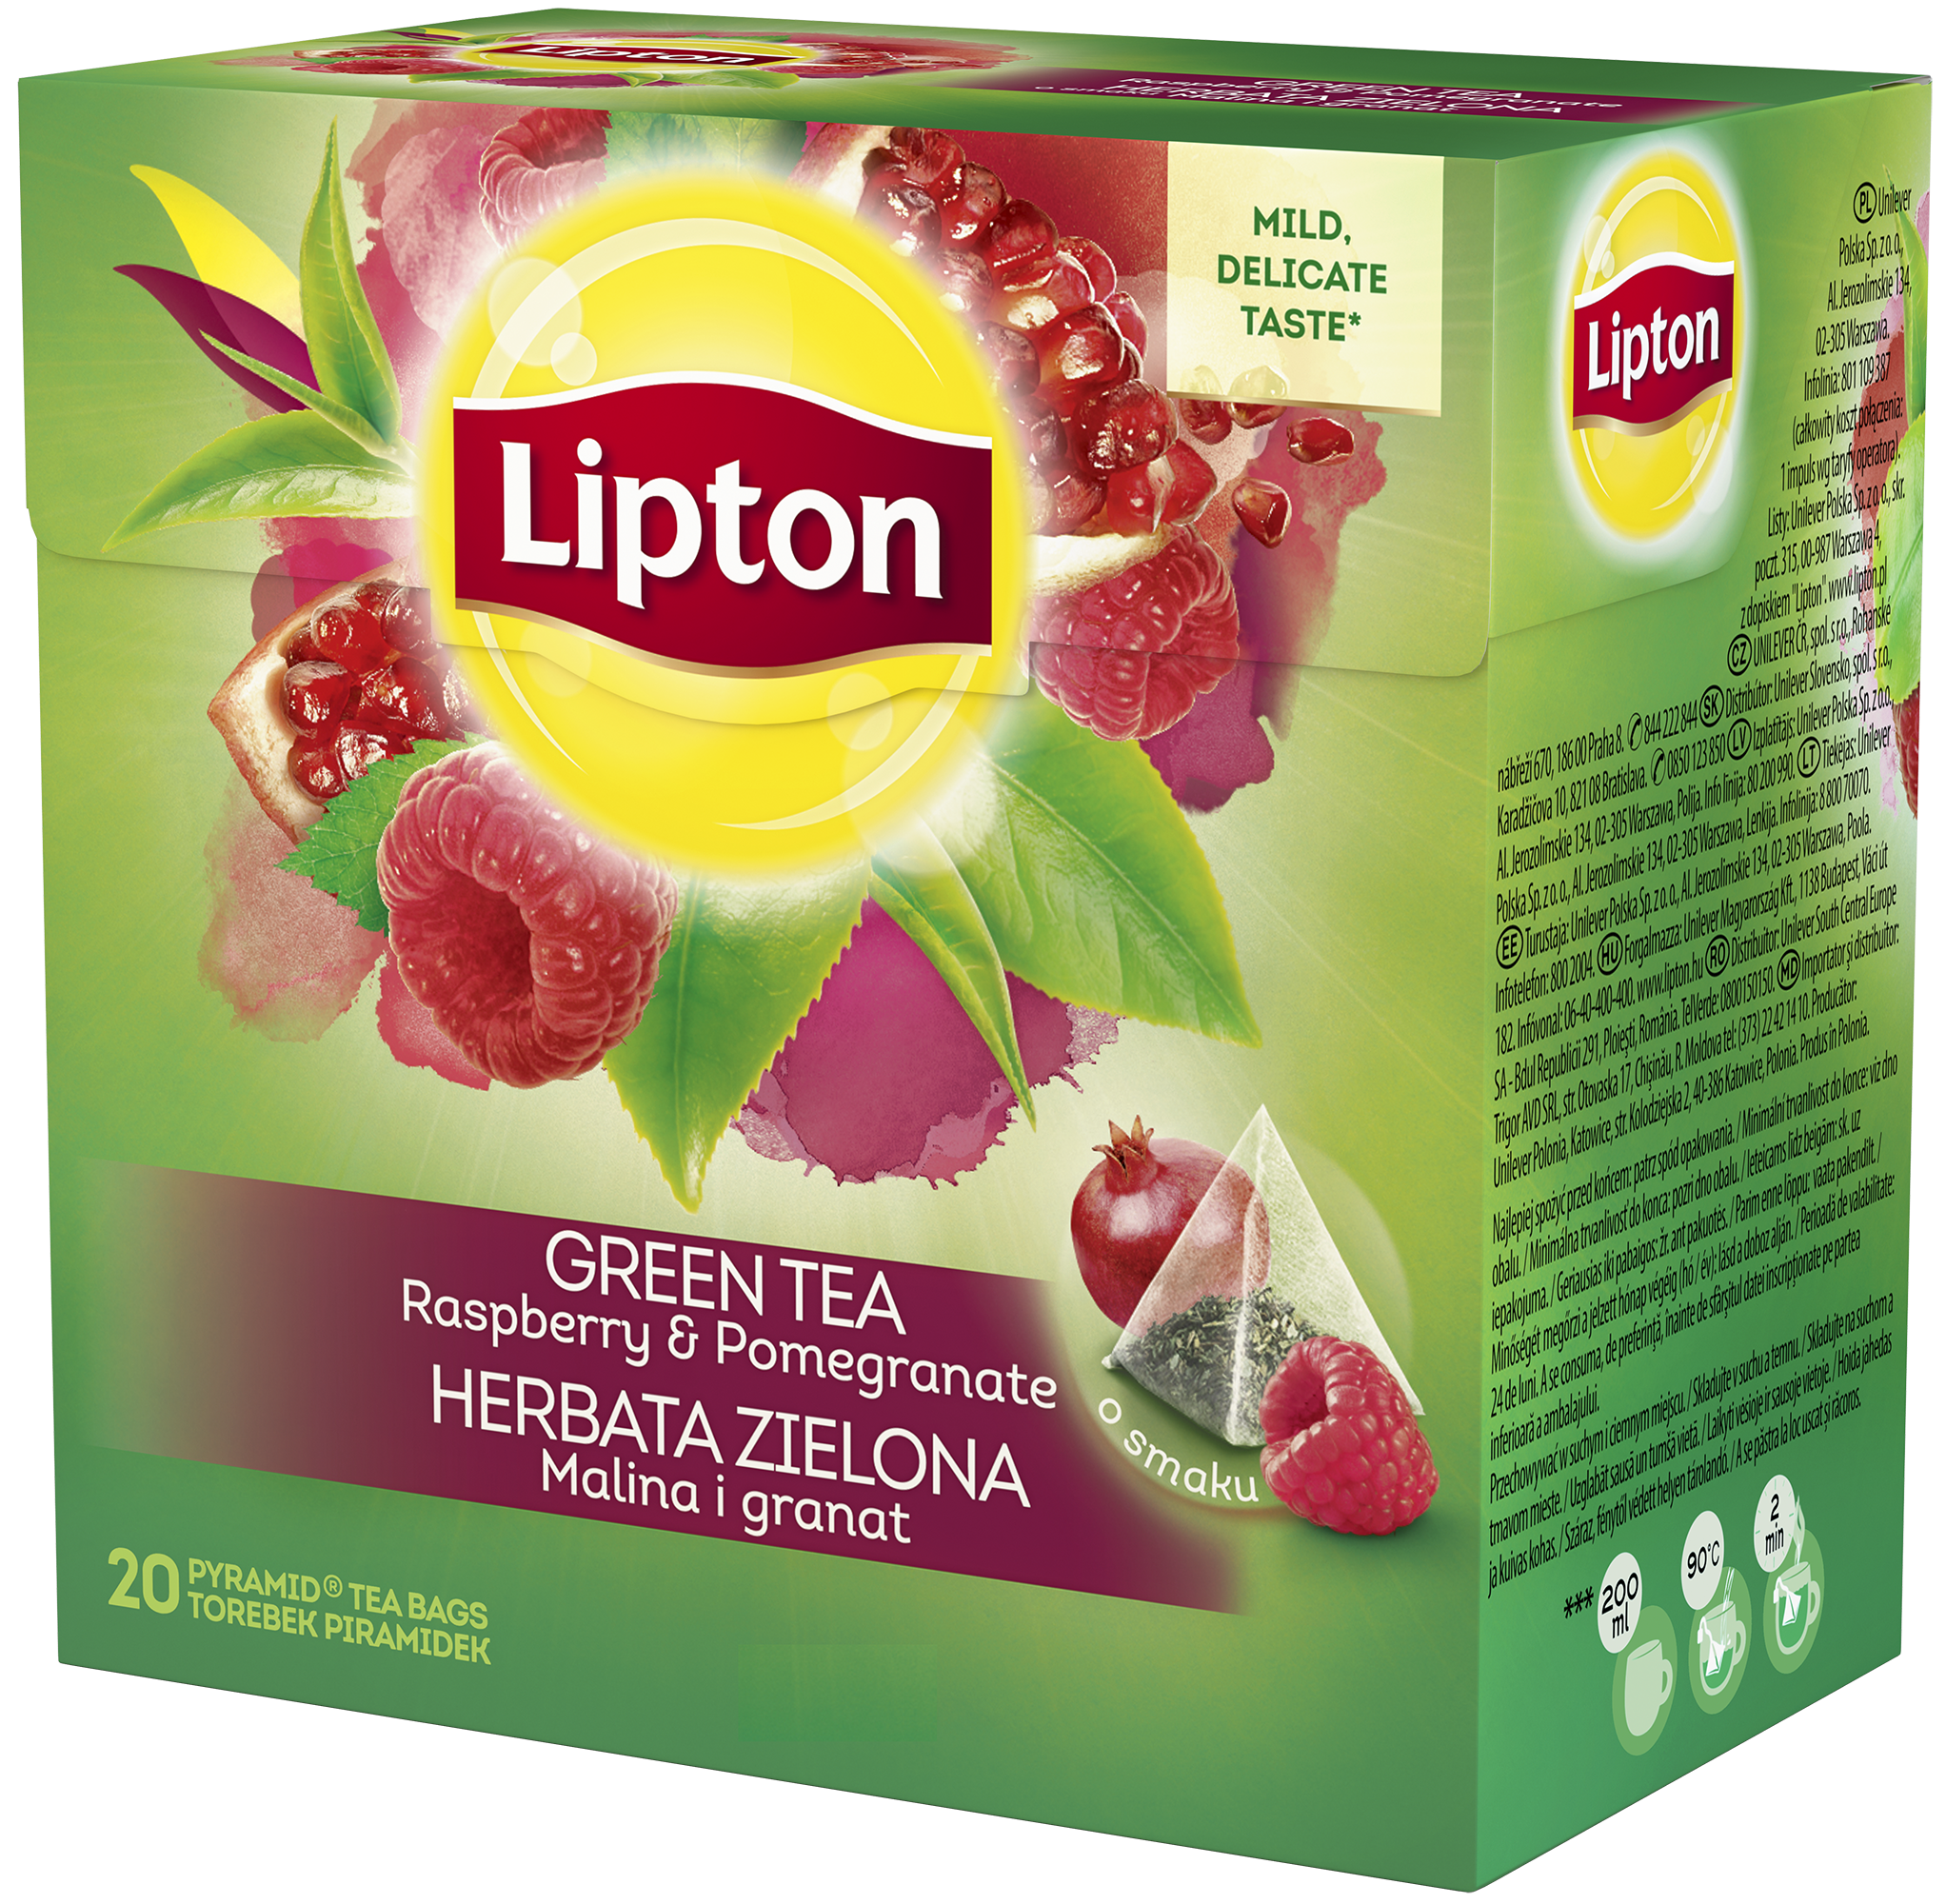 Картинки липтона. Липтон зеленый чай с малиной. Липтон чай зеленый Липтон чай зеленый. Липтон зеленая марка. Малиновый чай Липтон.